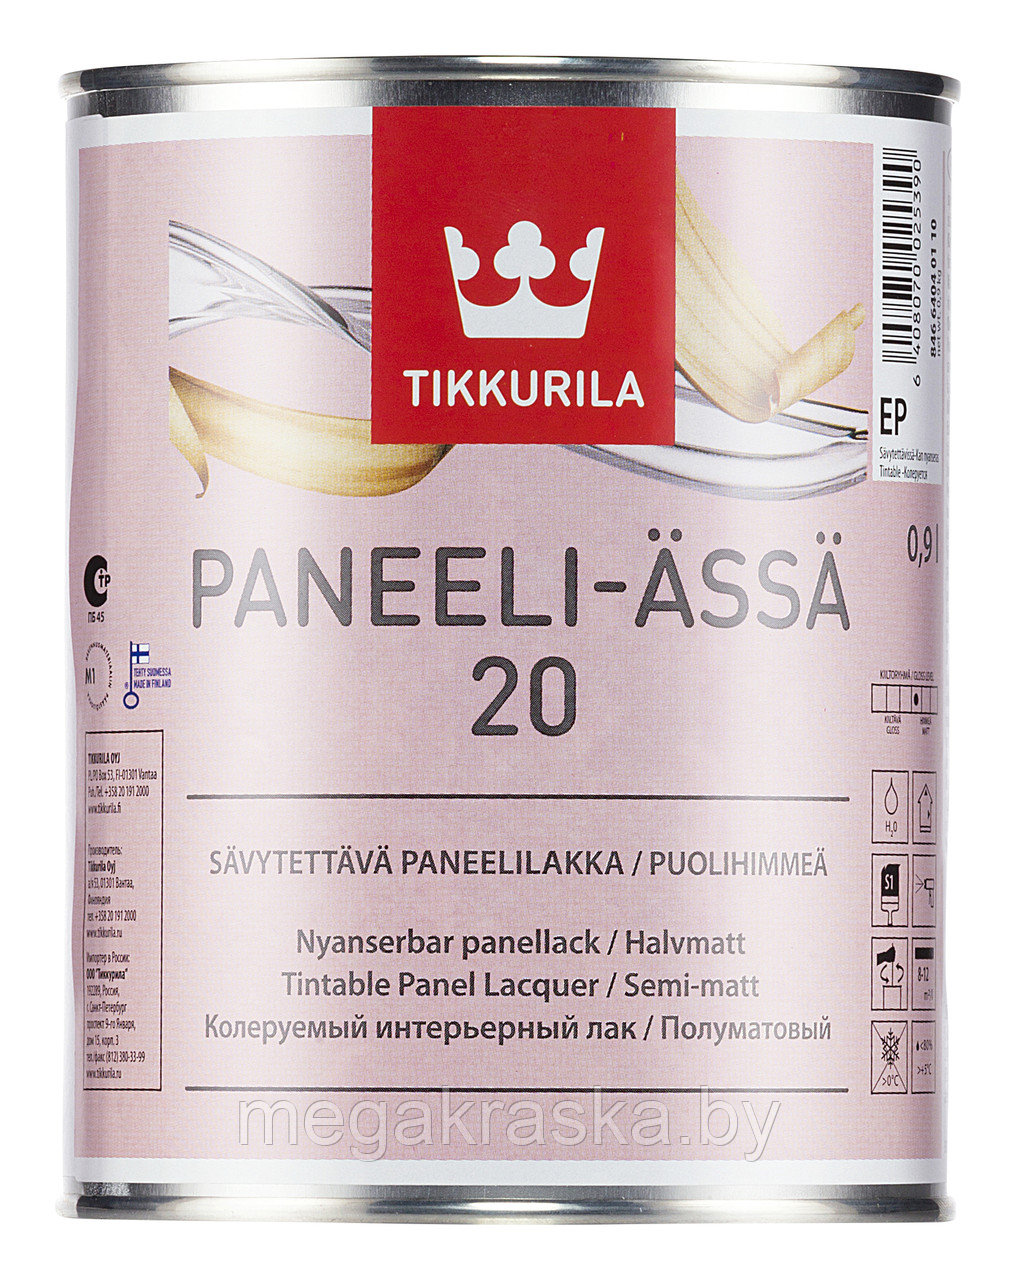 Лак акриловый интерьерный Tikkurila paneeli assa (панели-ясся) полуматовый 0,9л.